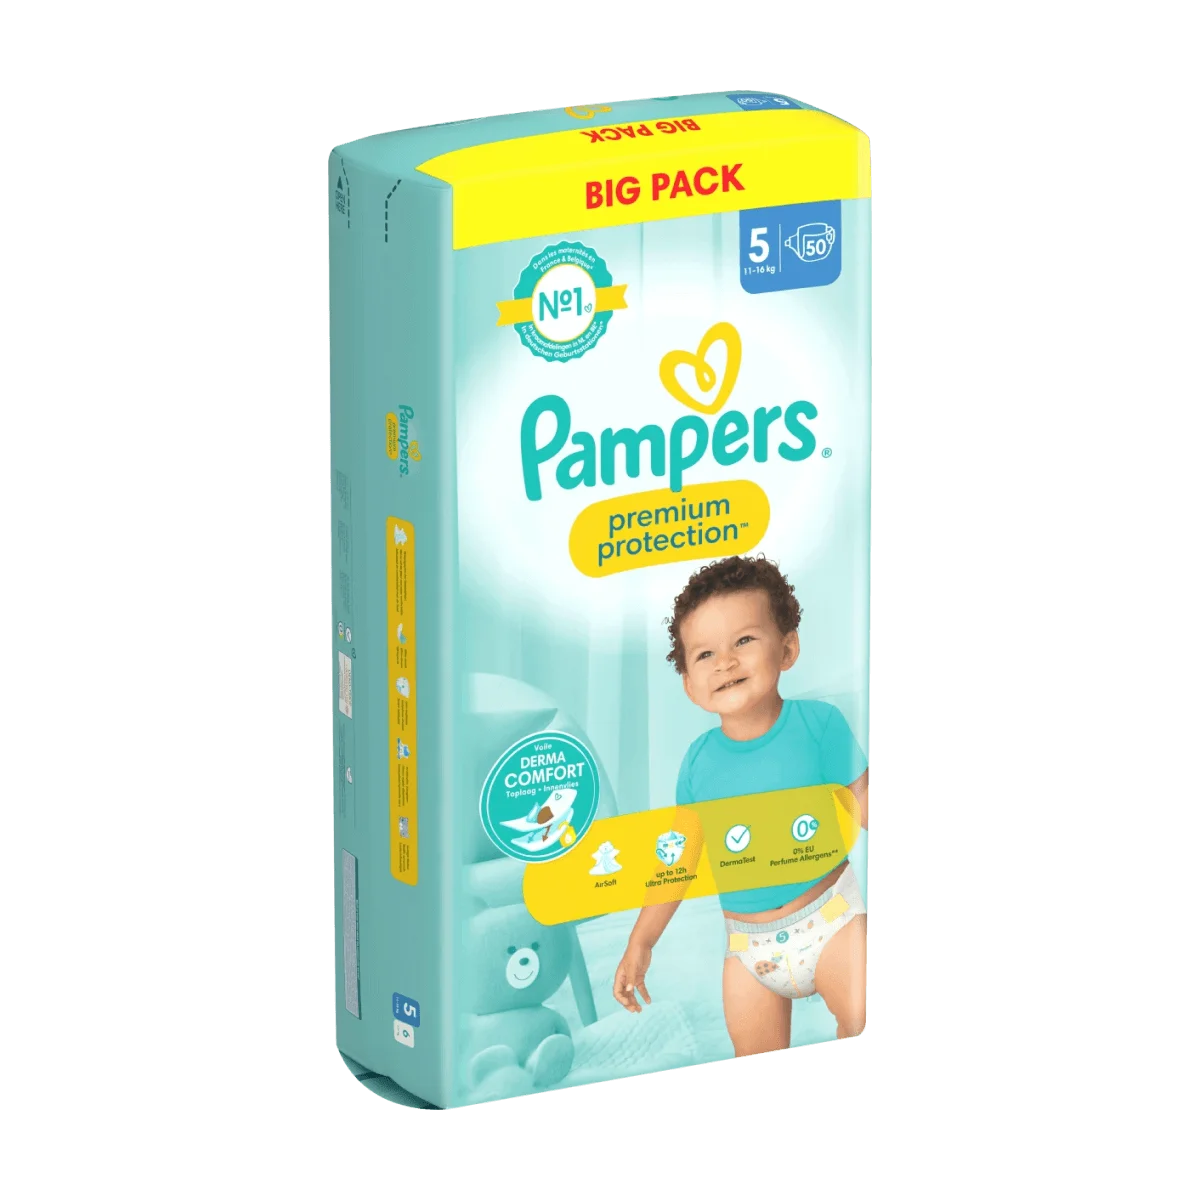 Pampers Lot de 50 couches pour bébé Taille 5 (11-16 kg) Premium Protection,  Junior, grand pack, meilleur confort et protection pour les peaux